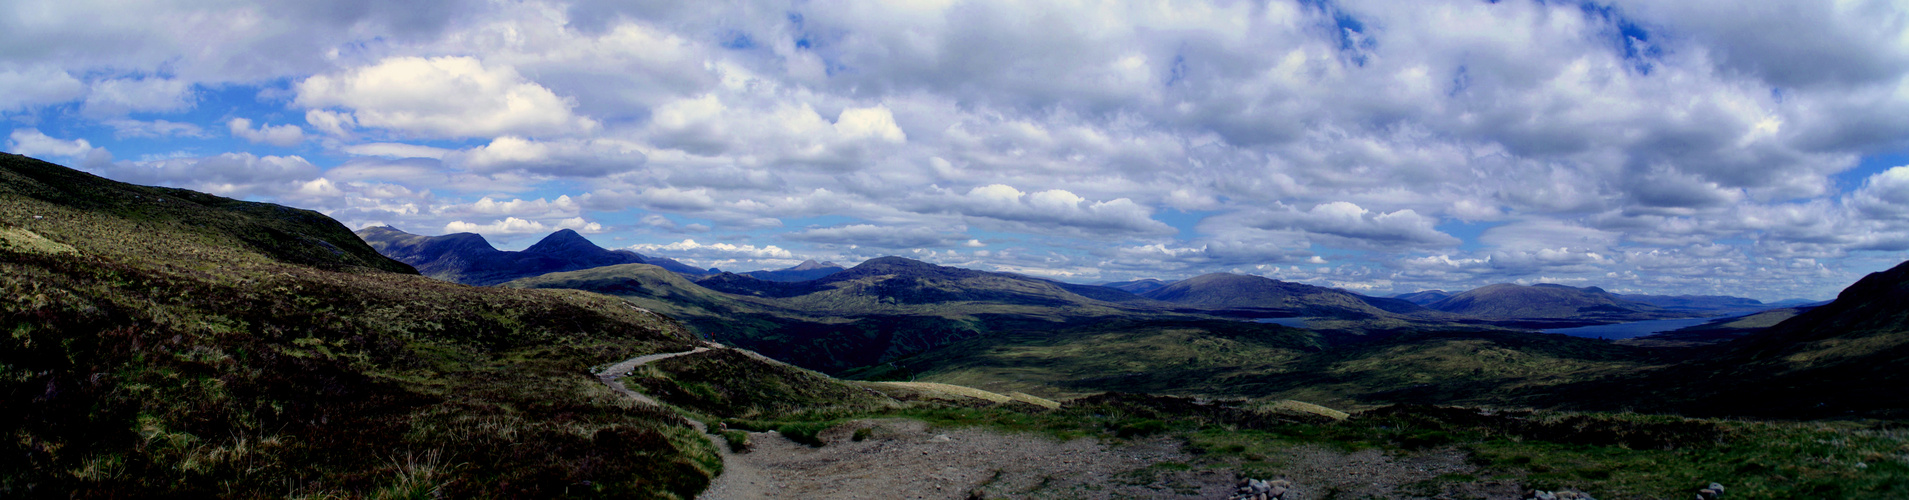 Schottland - West Highland Way